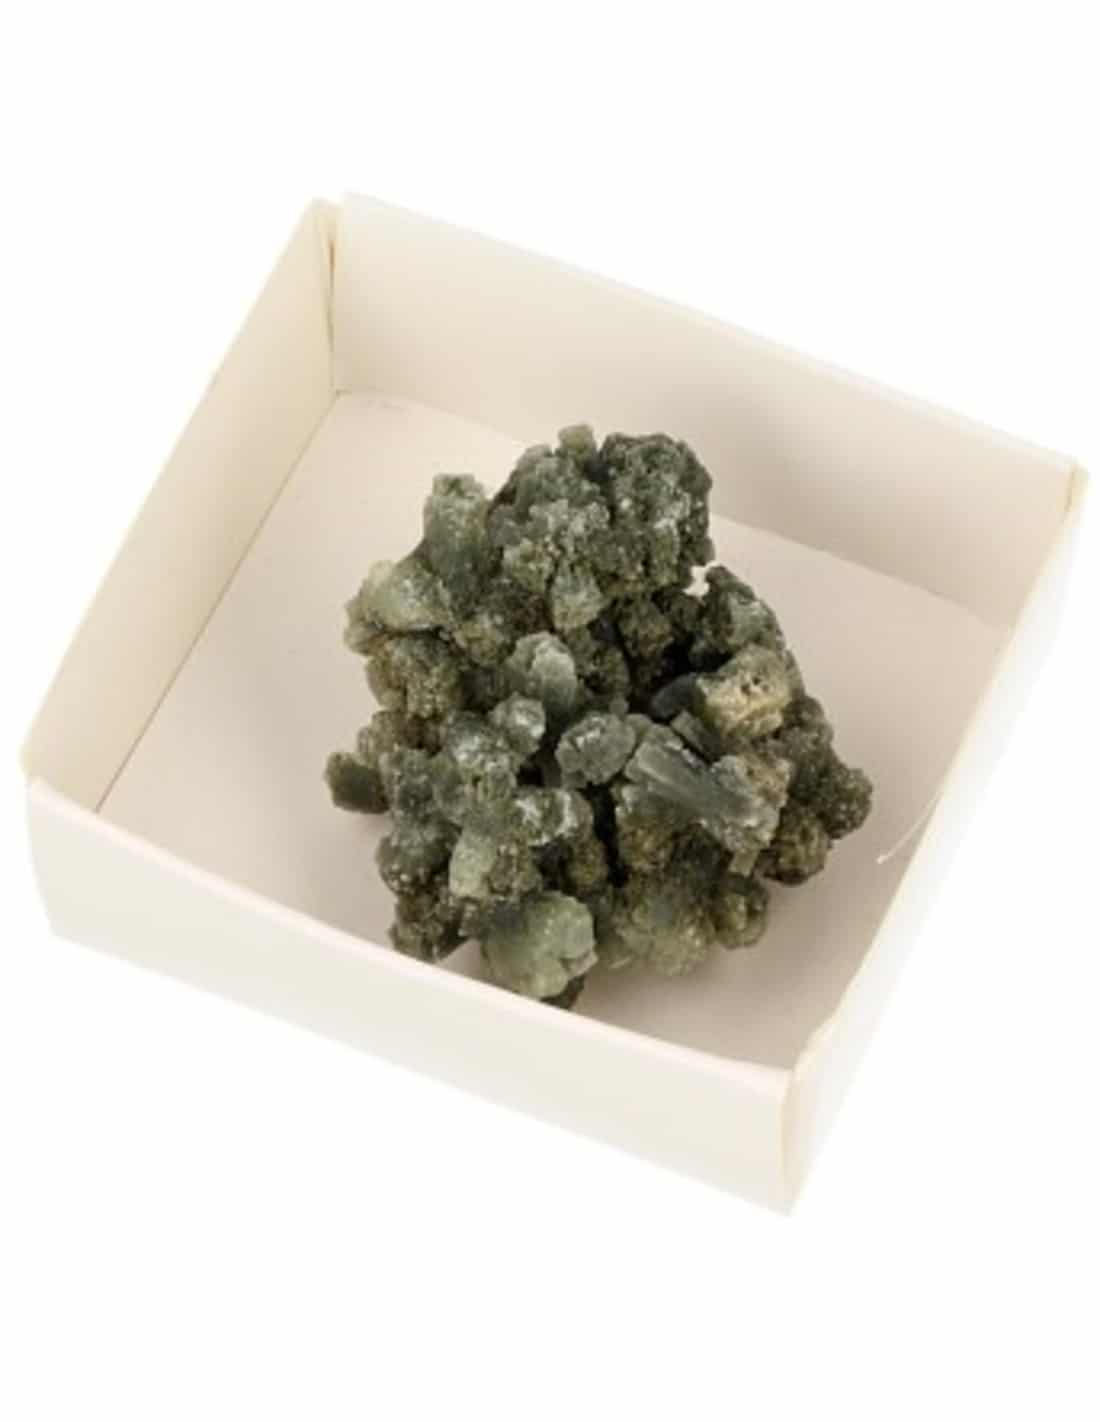 Schachtel Roher Edelstein Prehnit Traube kristallisiert unter Edelsteine & Mineralien - Edelstein Arten - Rohe Edelsteine